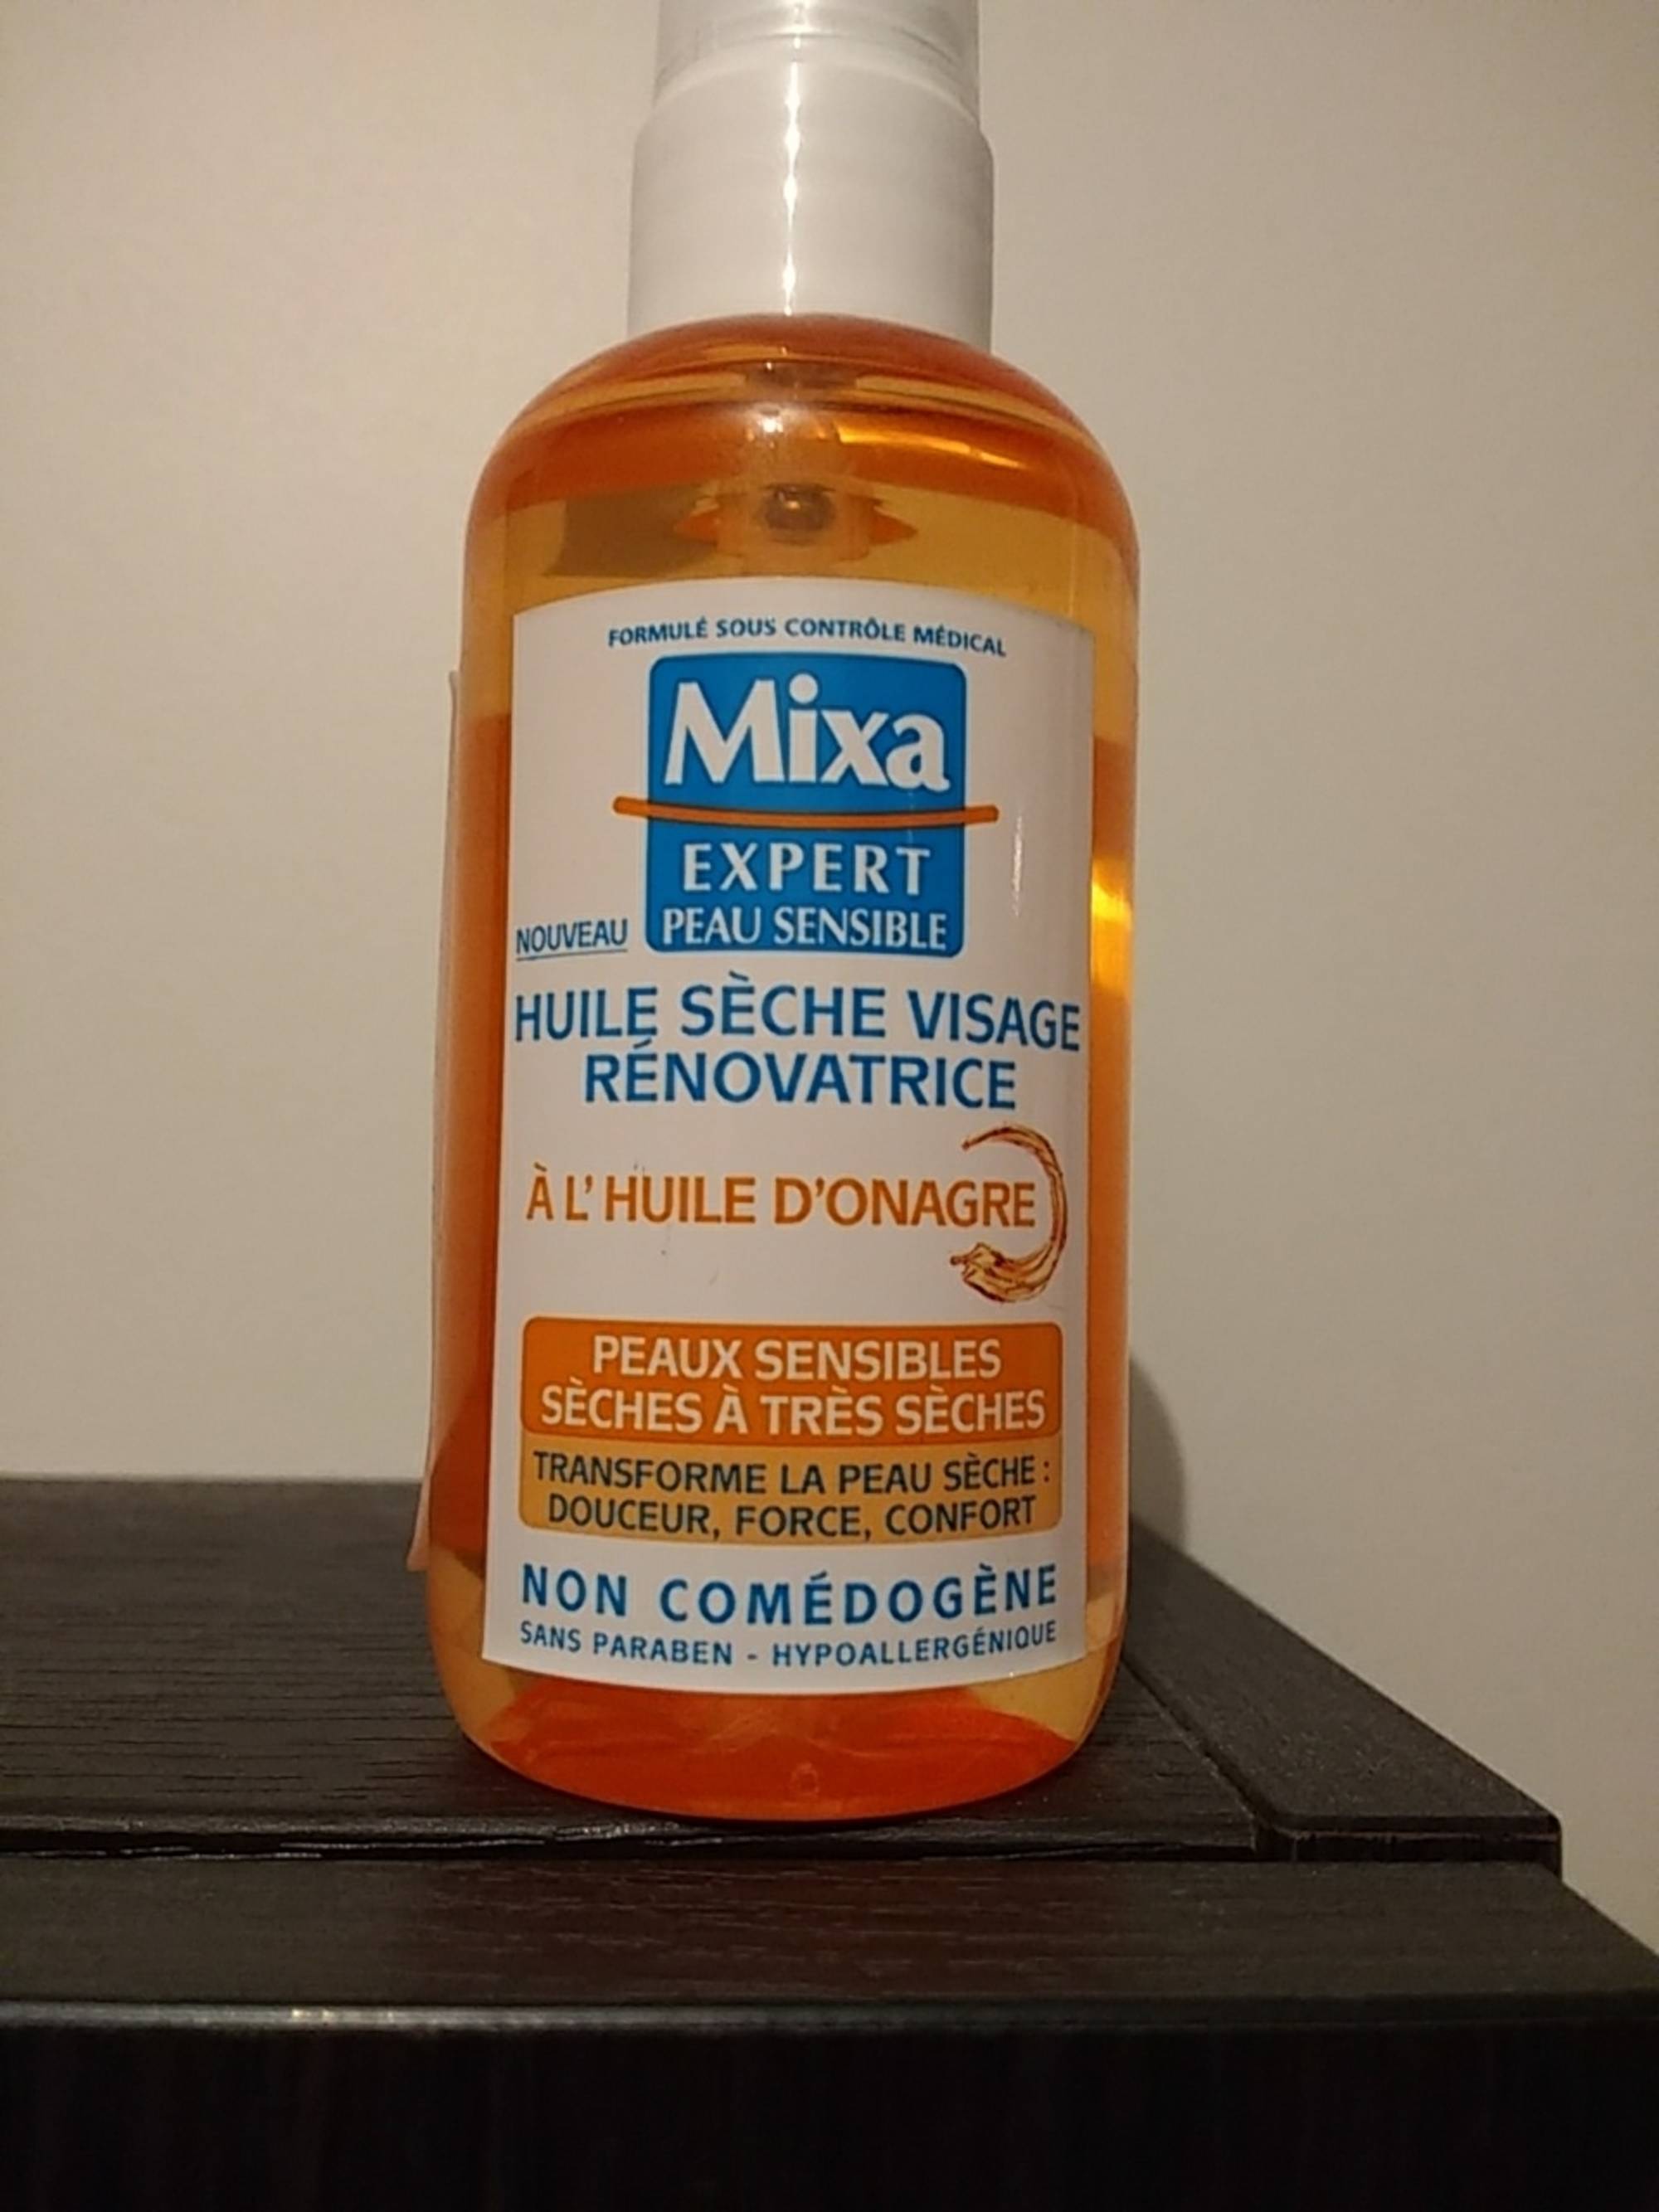 MIXA - Expert peau sensible - Huile sèche visage rénovatrice à l'huile d'onarge